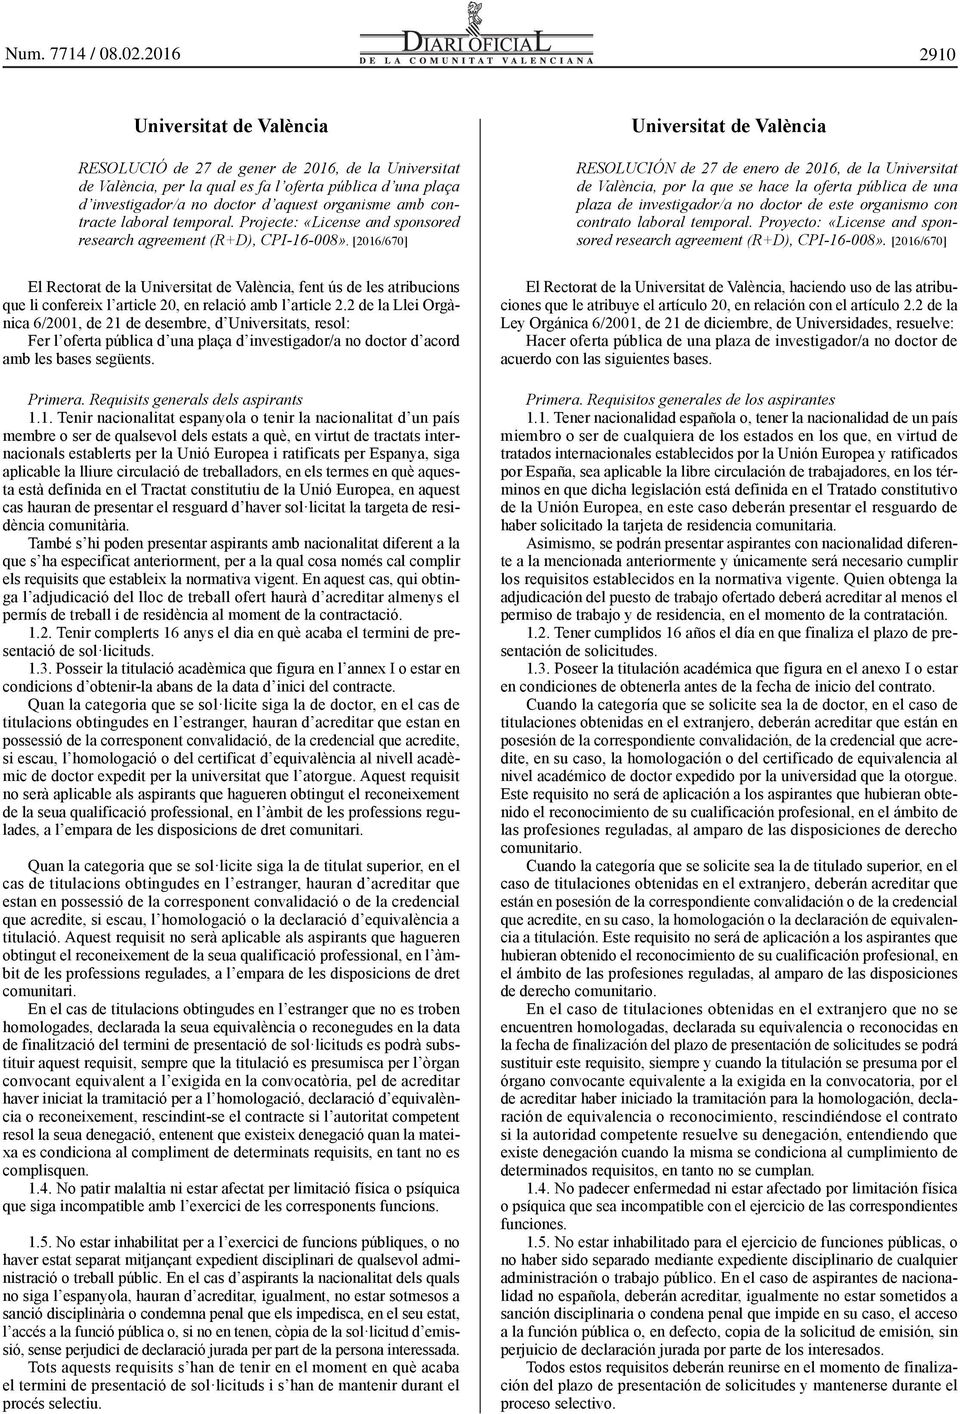 [2016/670] El Rectorat de la Universitat de València, fent ús de les atribucions que li confereix l article 20, en relació amb l article 2.